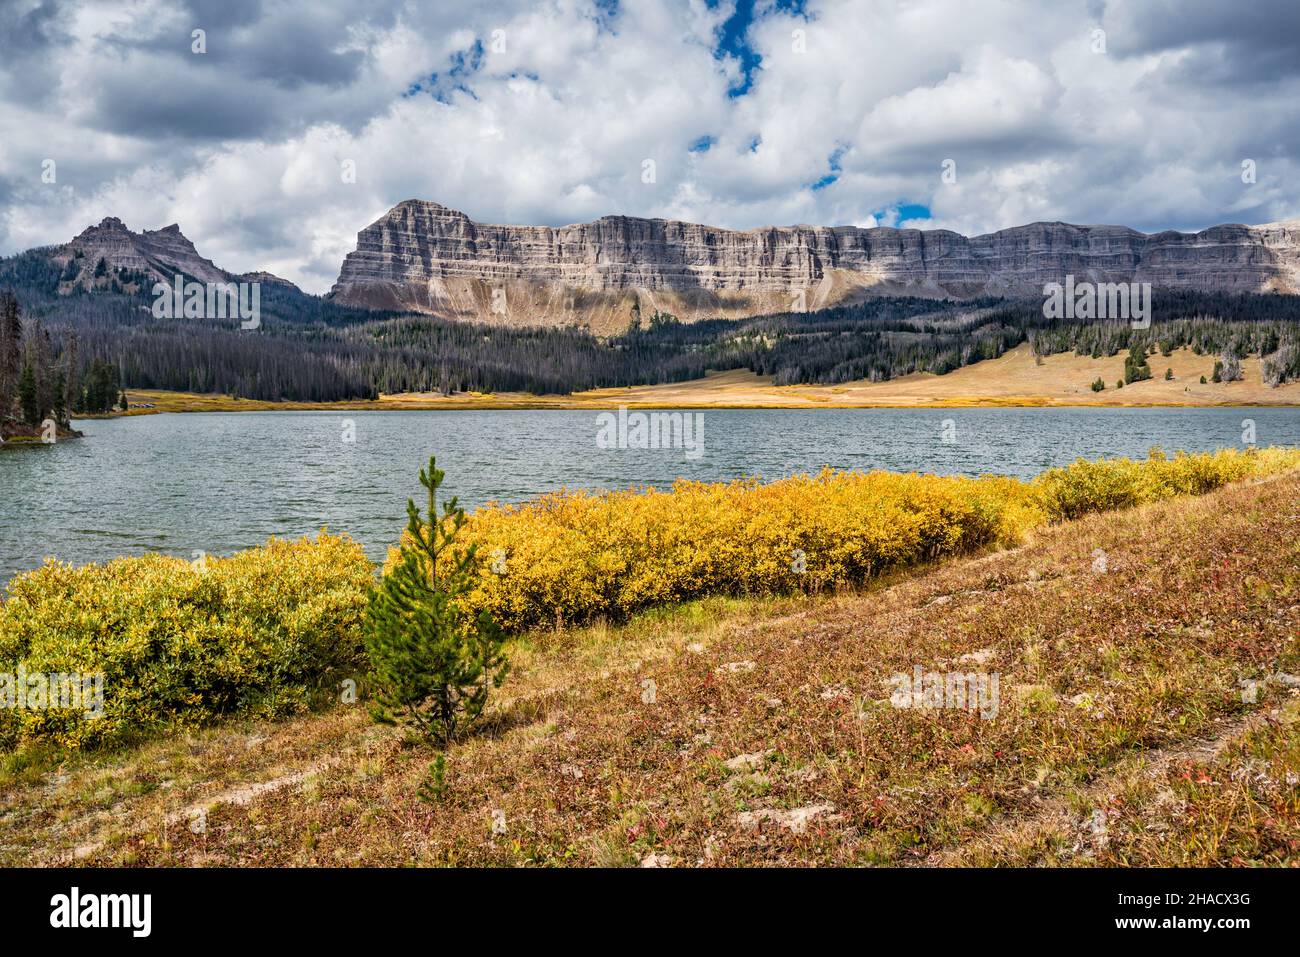 Falaises de breccia, pic de Sublette à gauche, buissons de couleur automnale au lac Brooks, chaîne d'Absaroka, montagnes Rocheuses, forêt nationale de Shoshone, Wyoming,ÉTATS-UNIS Banque D'Images